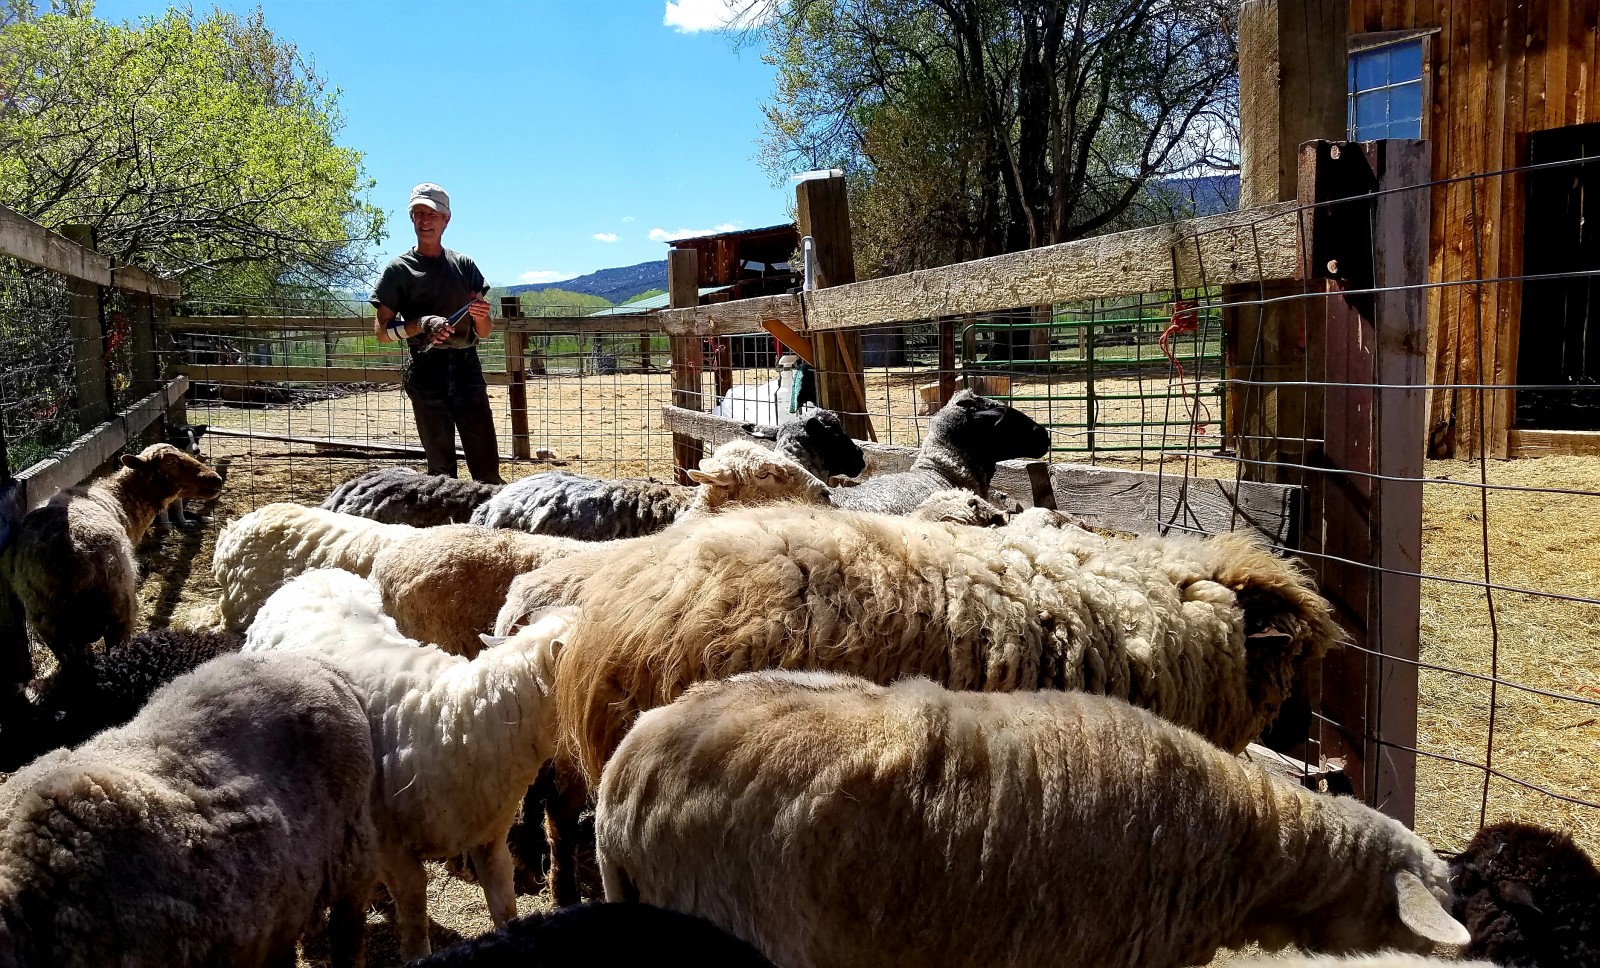 Churro sheep shearing at Los Luceros - Photo by A. Espada